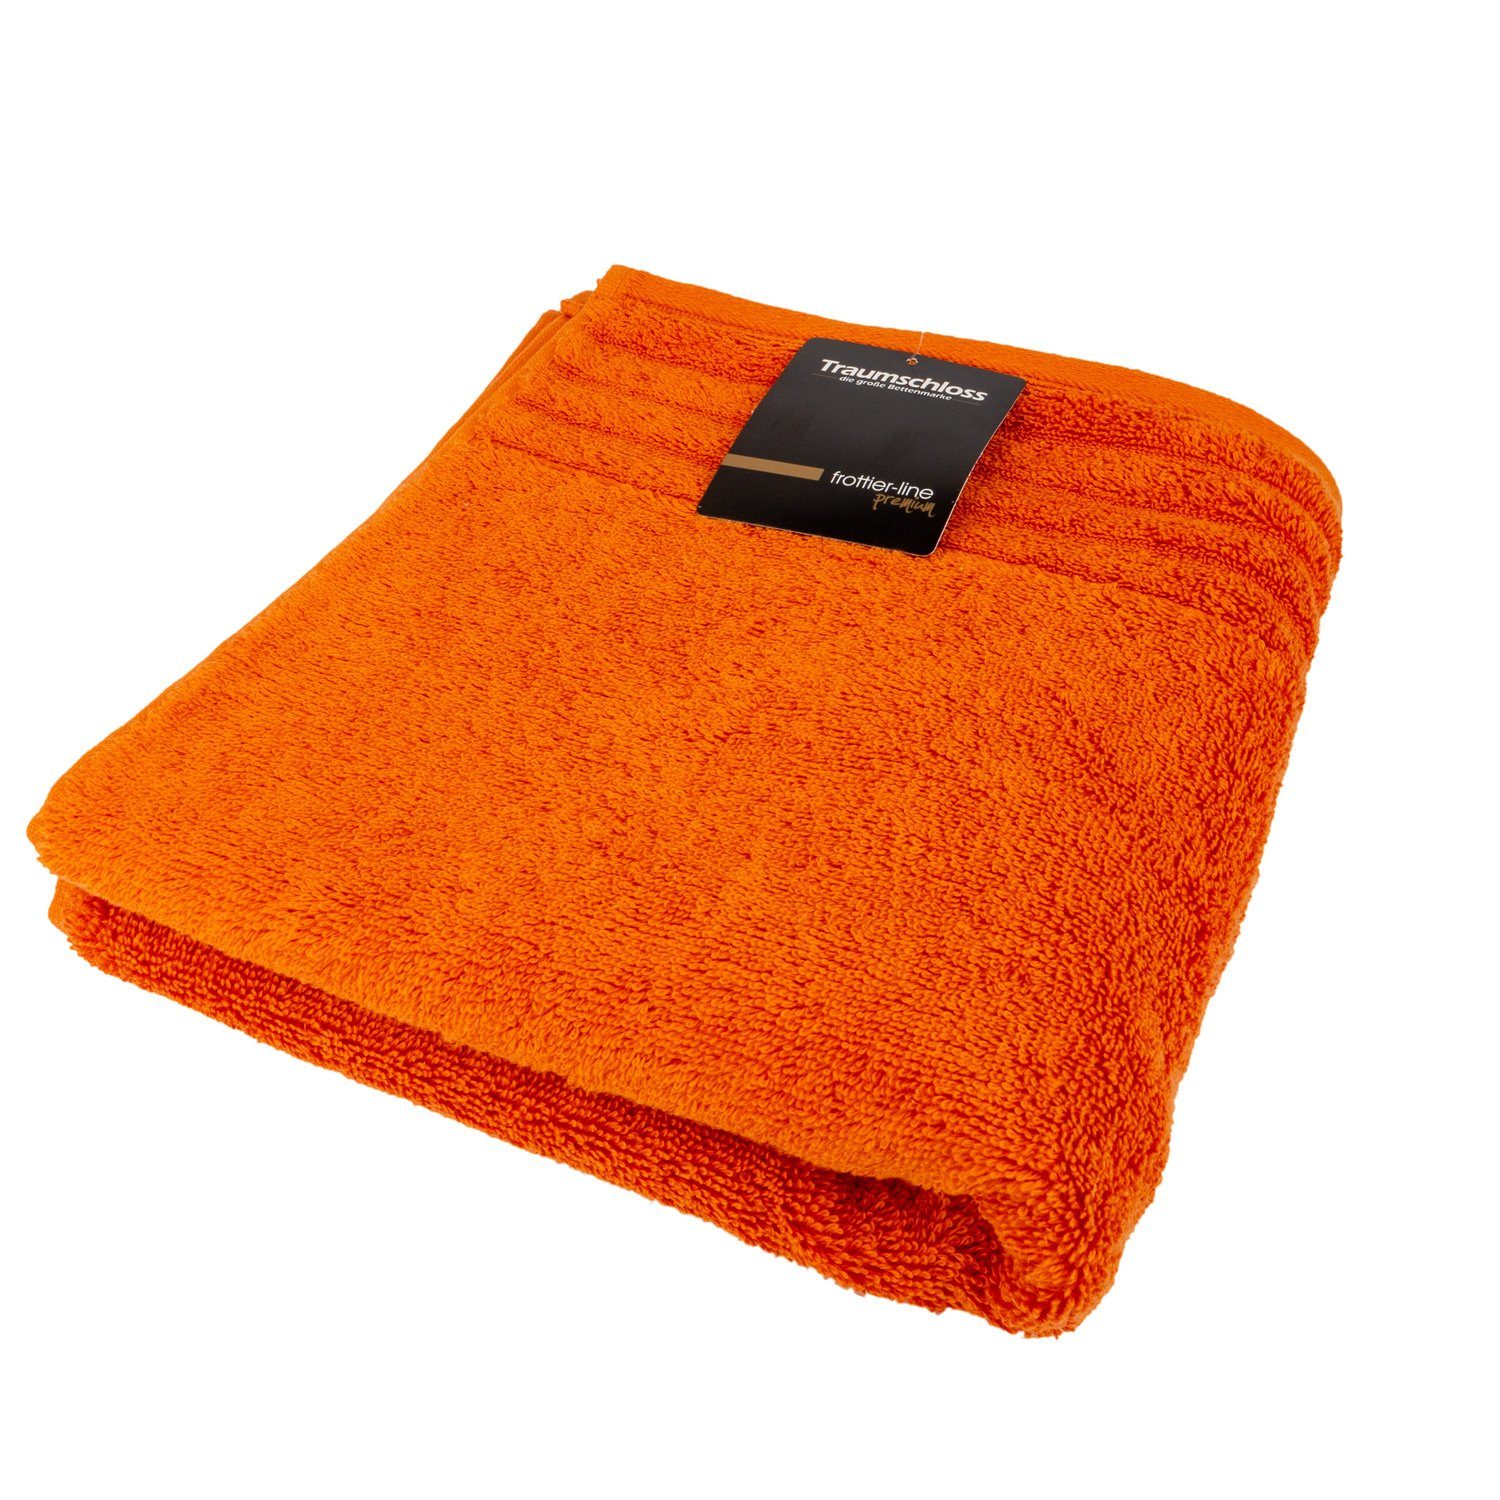 Traumschloss Gästehandtuch Premium-Line, Frottier (1-St), 100% Baumwolle 600g/m² orange mit Supima amerikanische